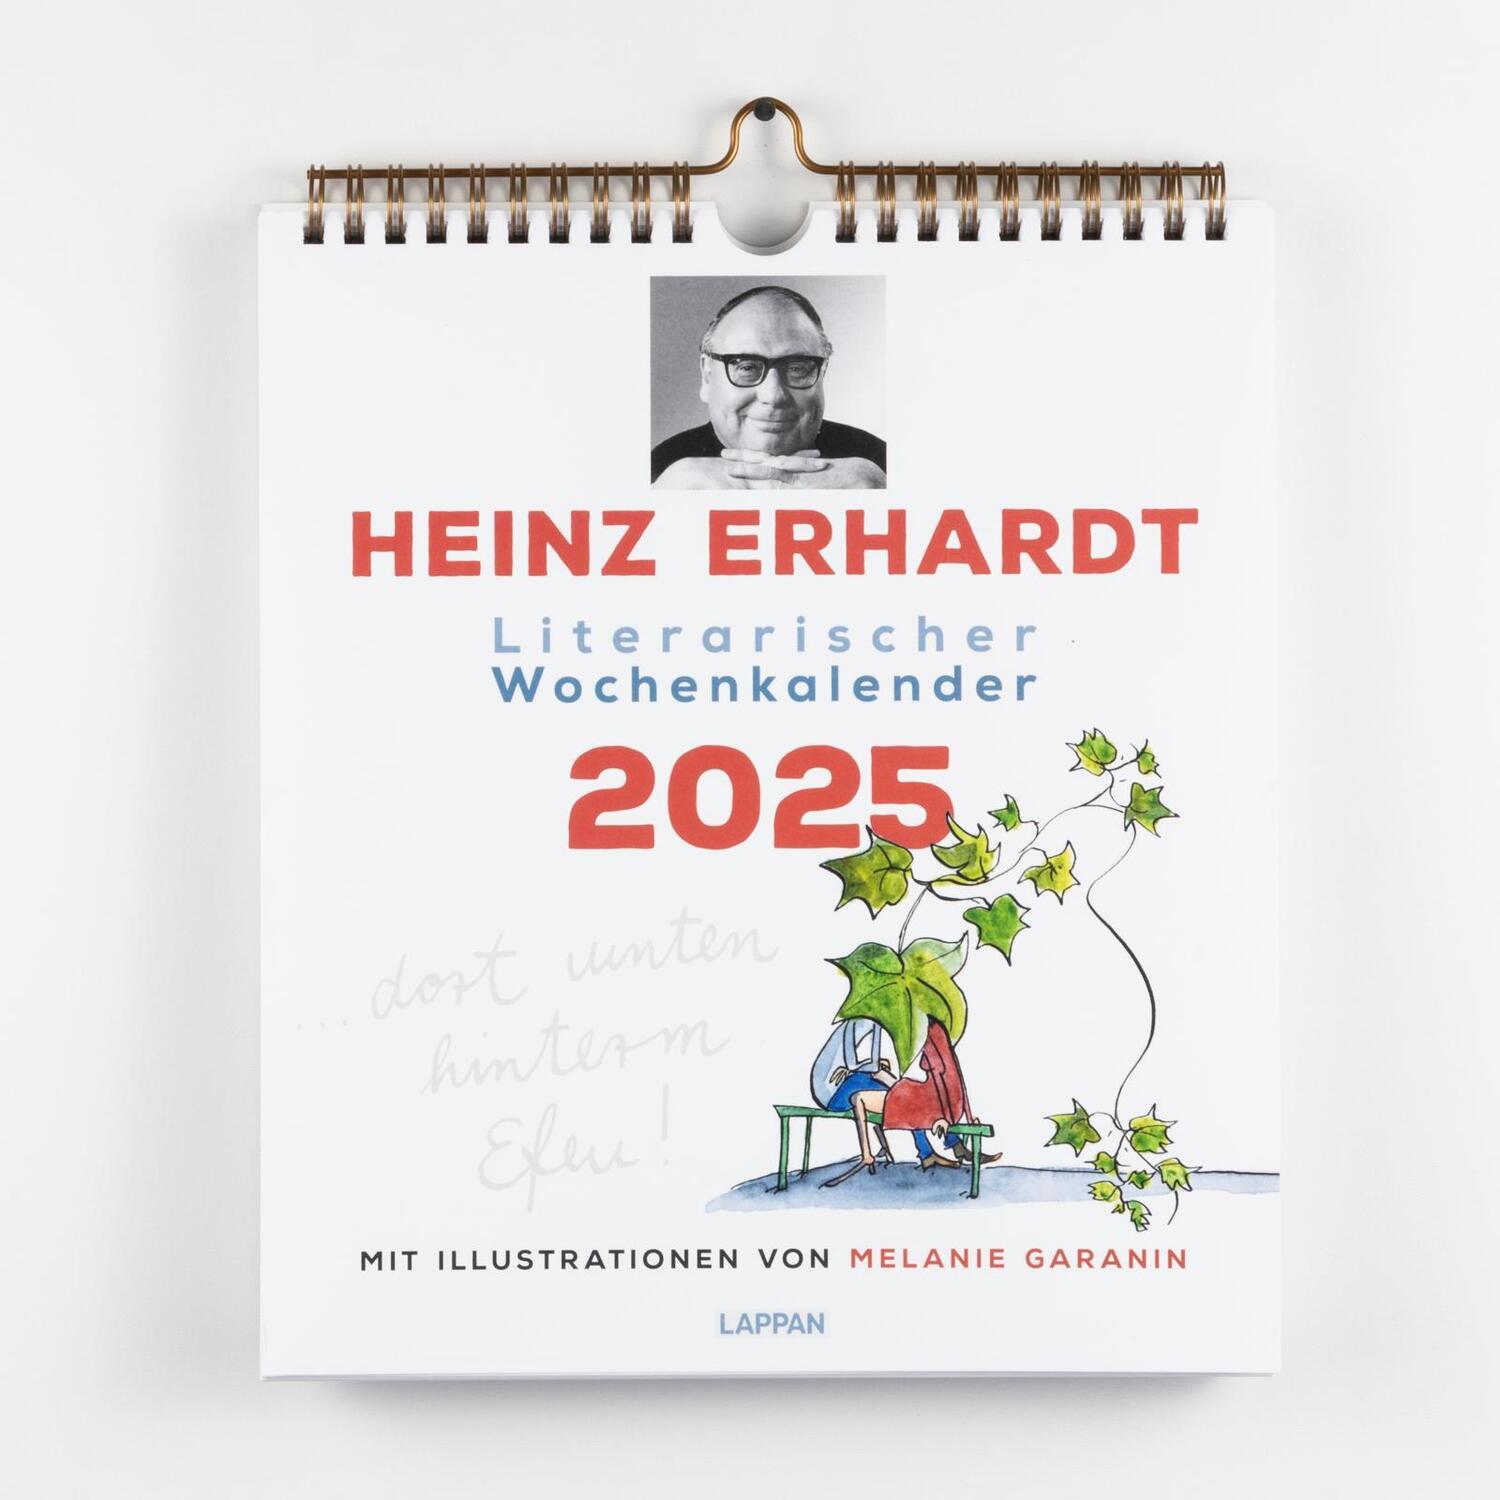 Bild: 9783830321392 | Heinz Erhardt: Literarischer Wochenkalender 2025 | Heinz Erhardt